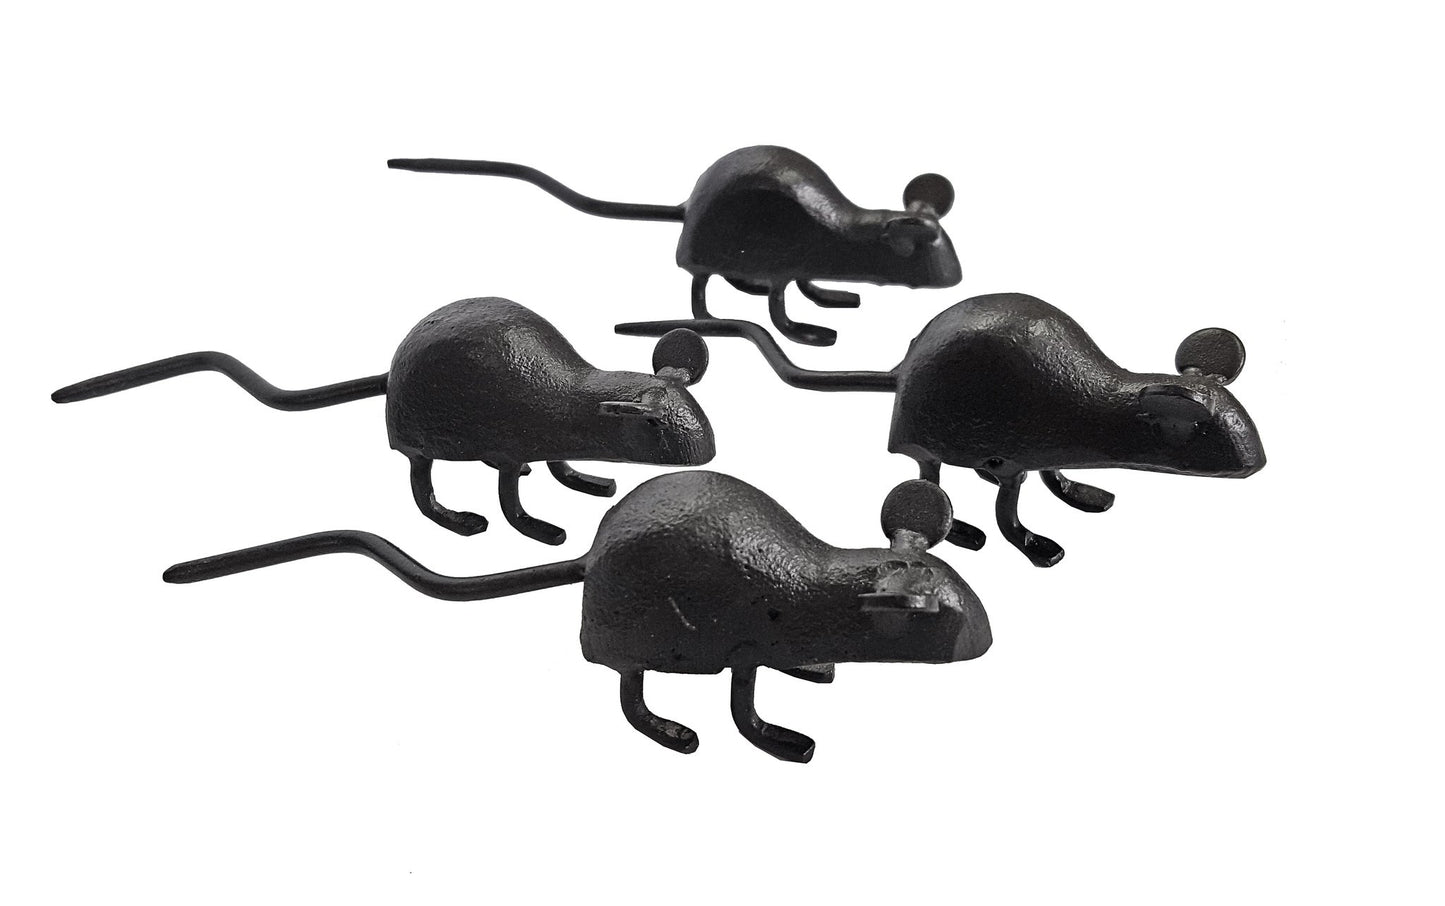 Sculptures de jardin mini souris, statuettes de souris noires pour intérieur ou extérieur